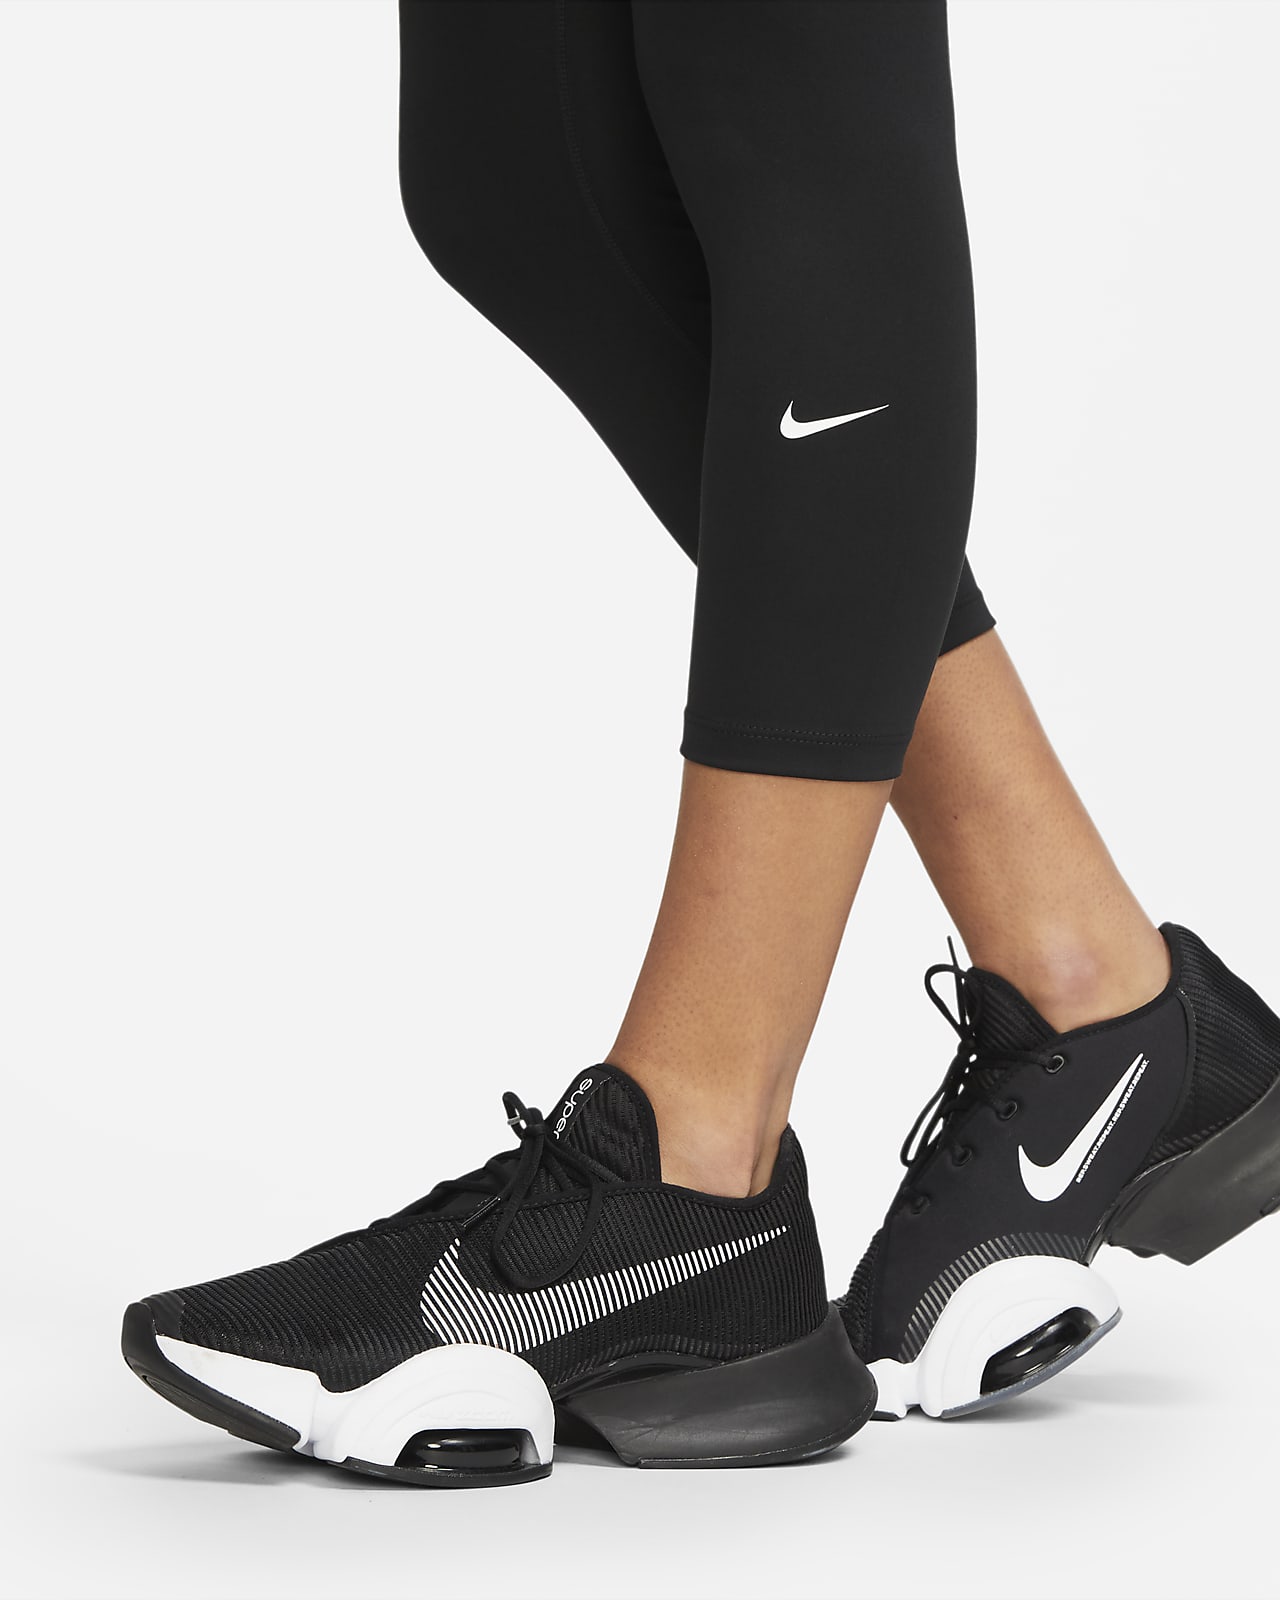 Nike One Women's Training Tights - Dark Russet/White